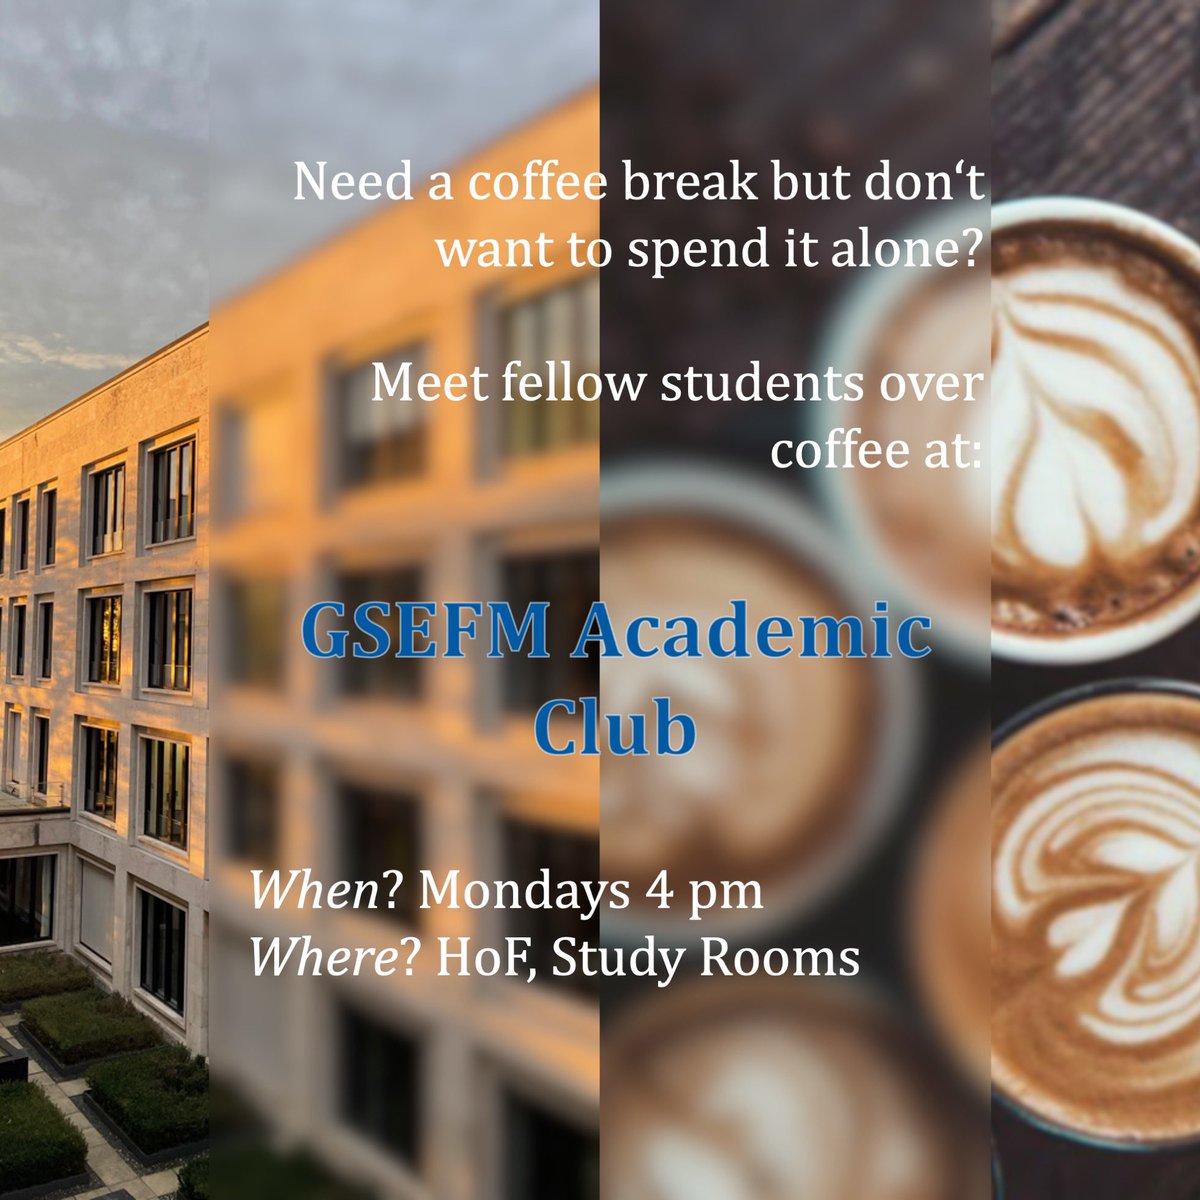 Time for a coffee break? #HouseofFinance
 
#coffee #takeabreak #gradschoollife #studentslife